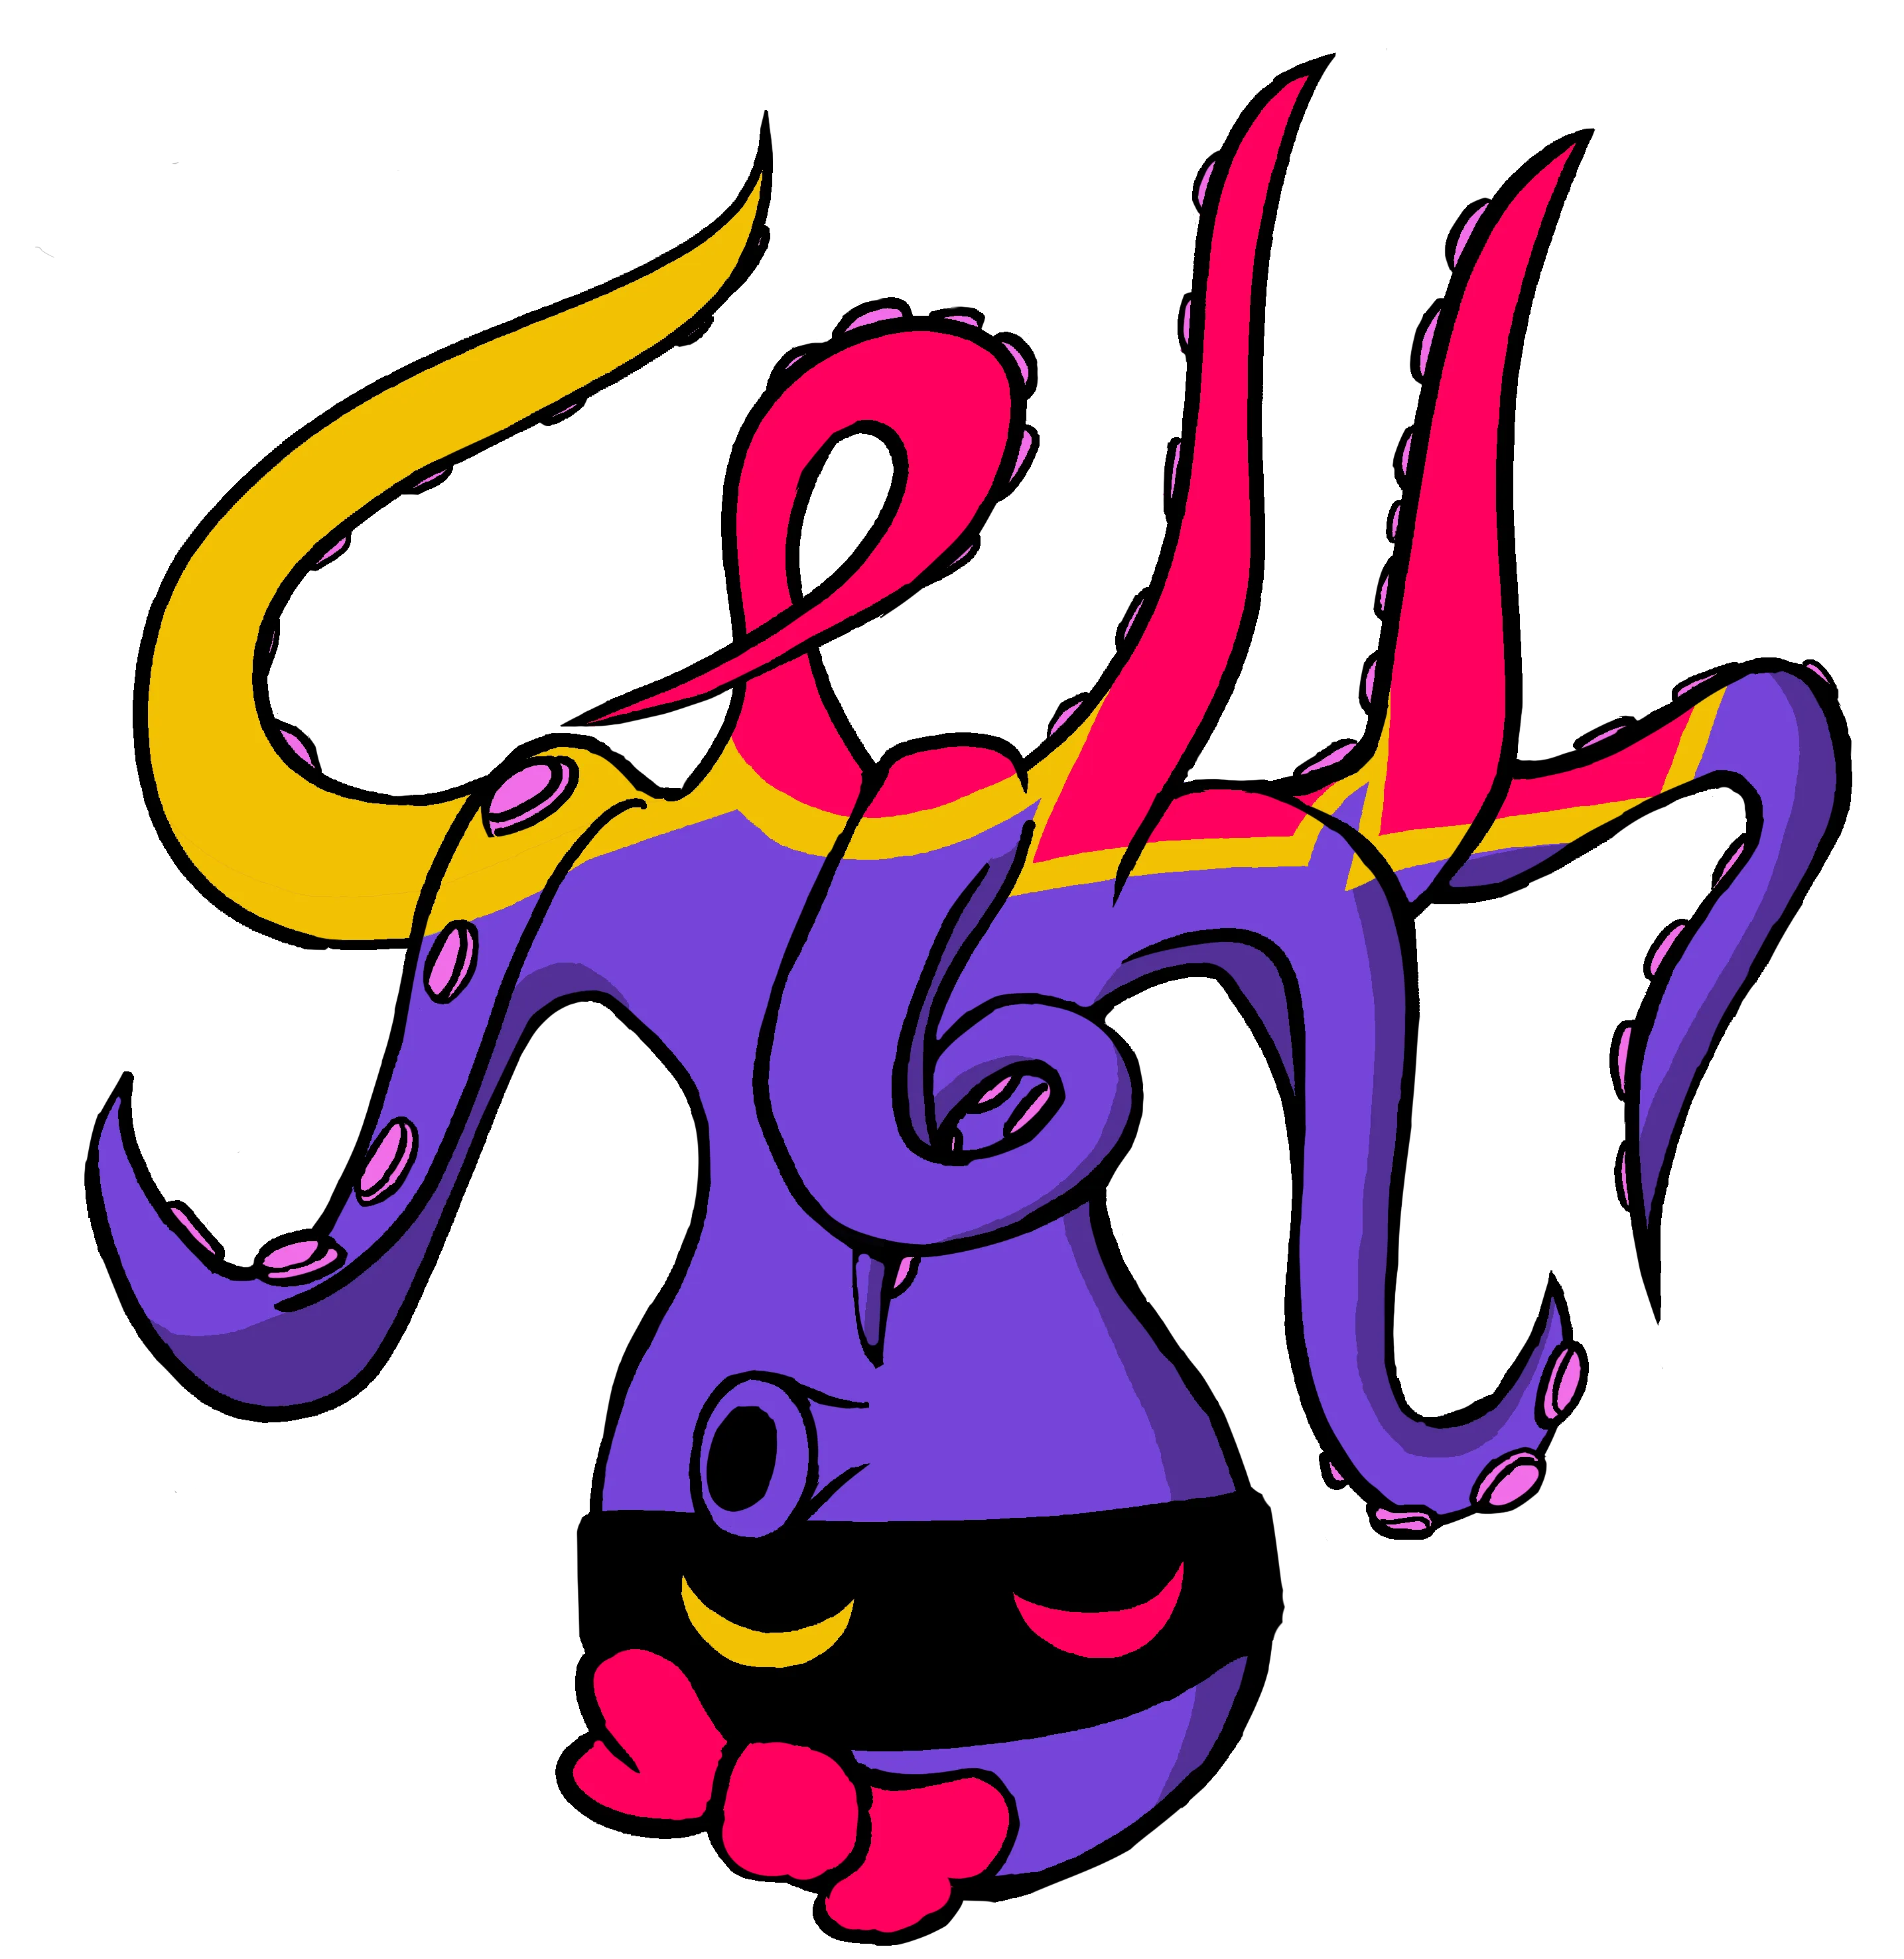 Logo de Cell